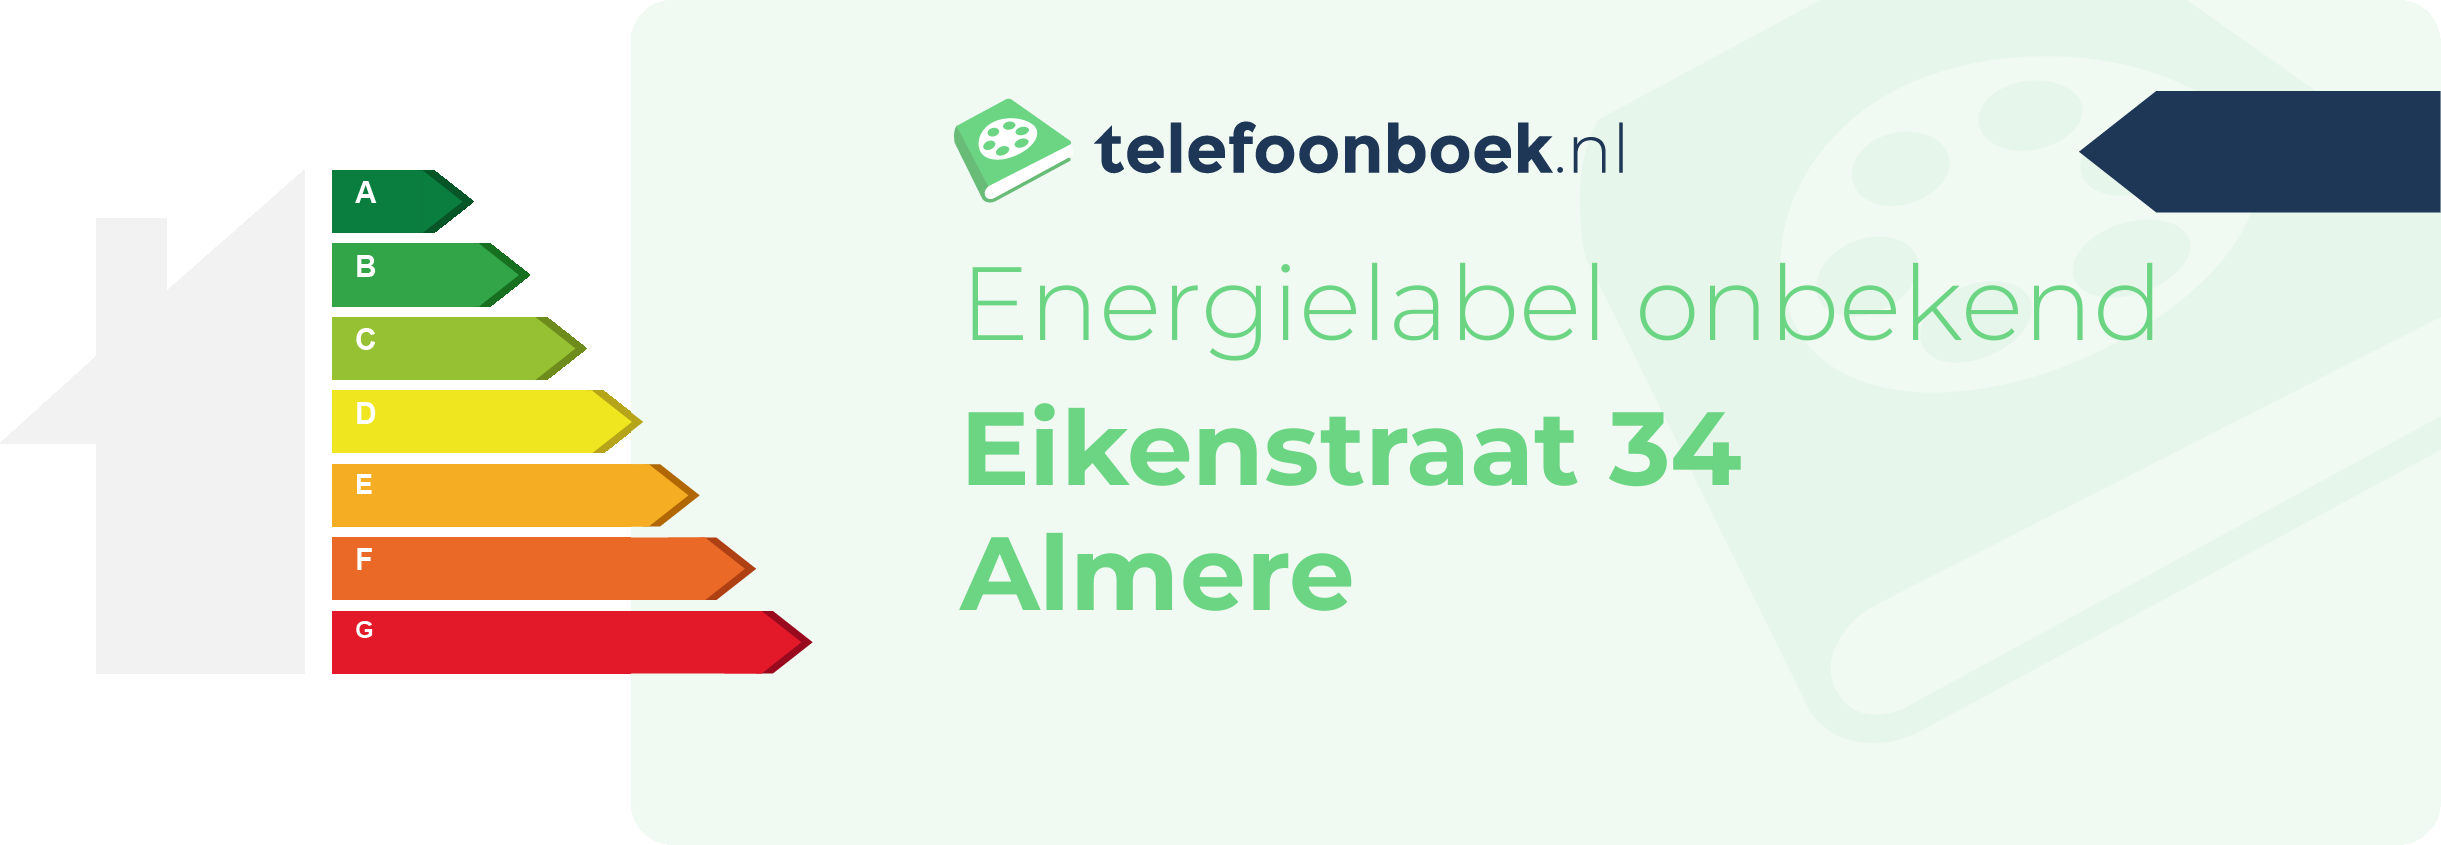 Energielabel Eikenstraat 34 Almere